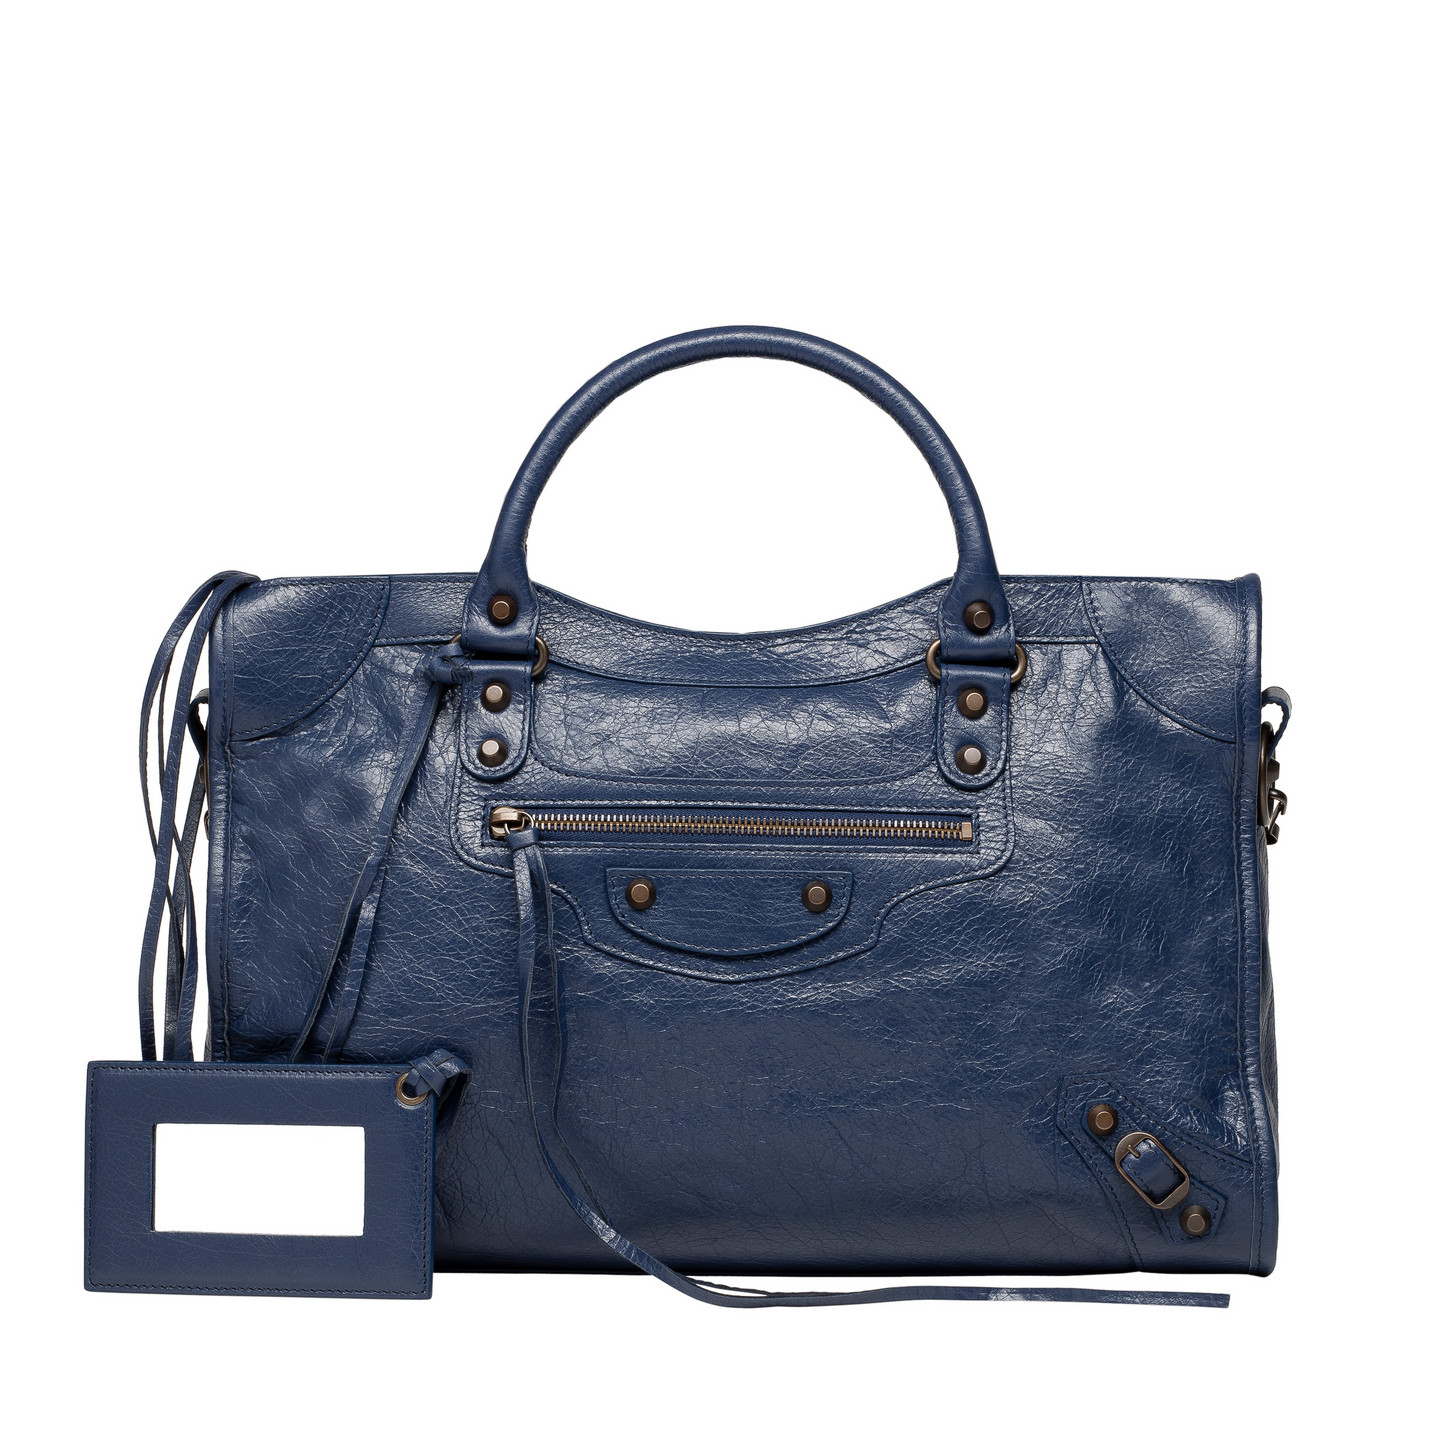 Balenciaga Classic City - Gris Chartreux - Women's Classic City Handbag